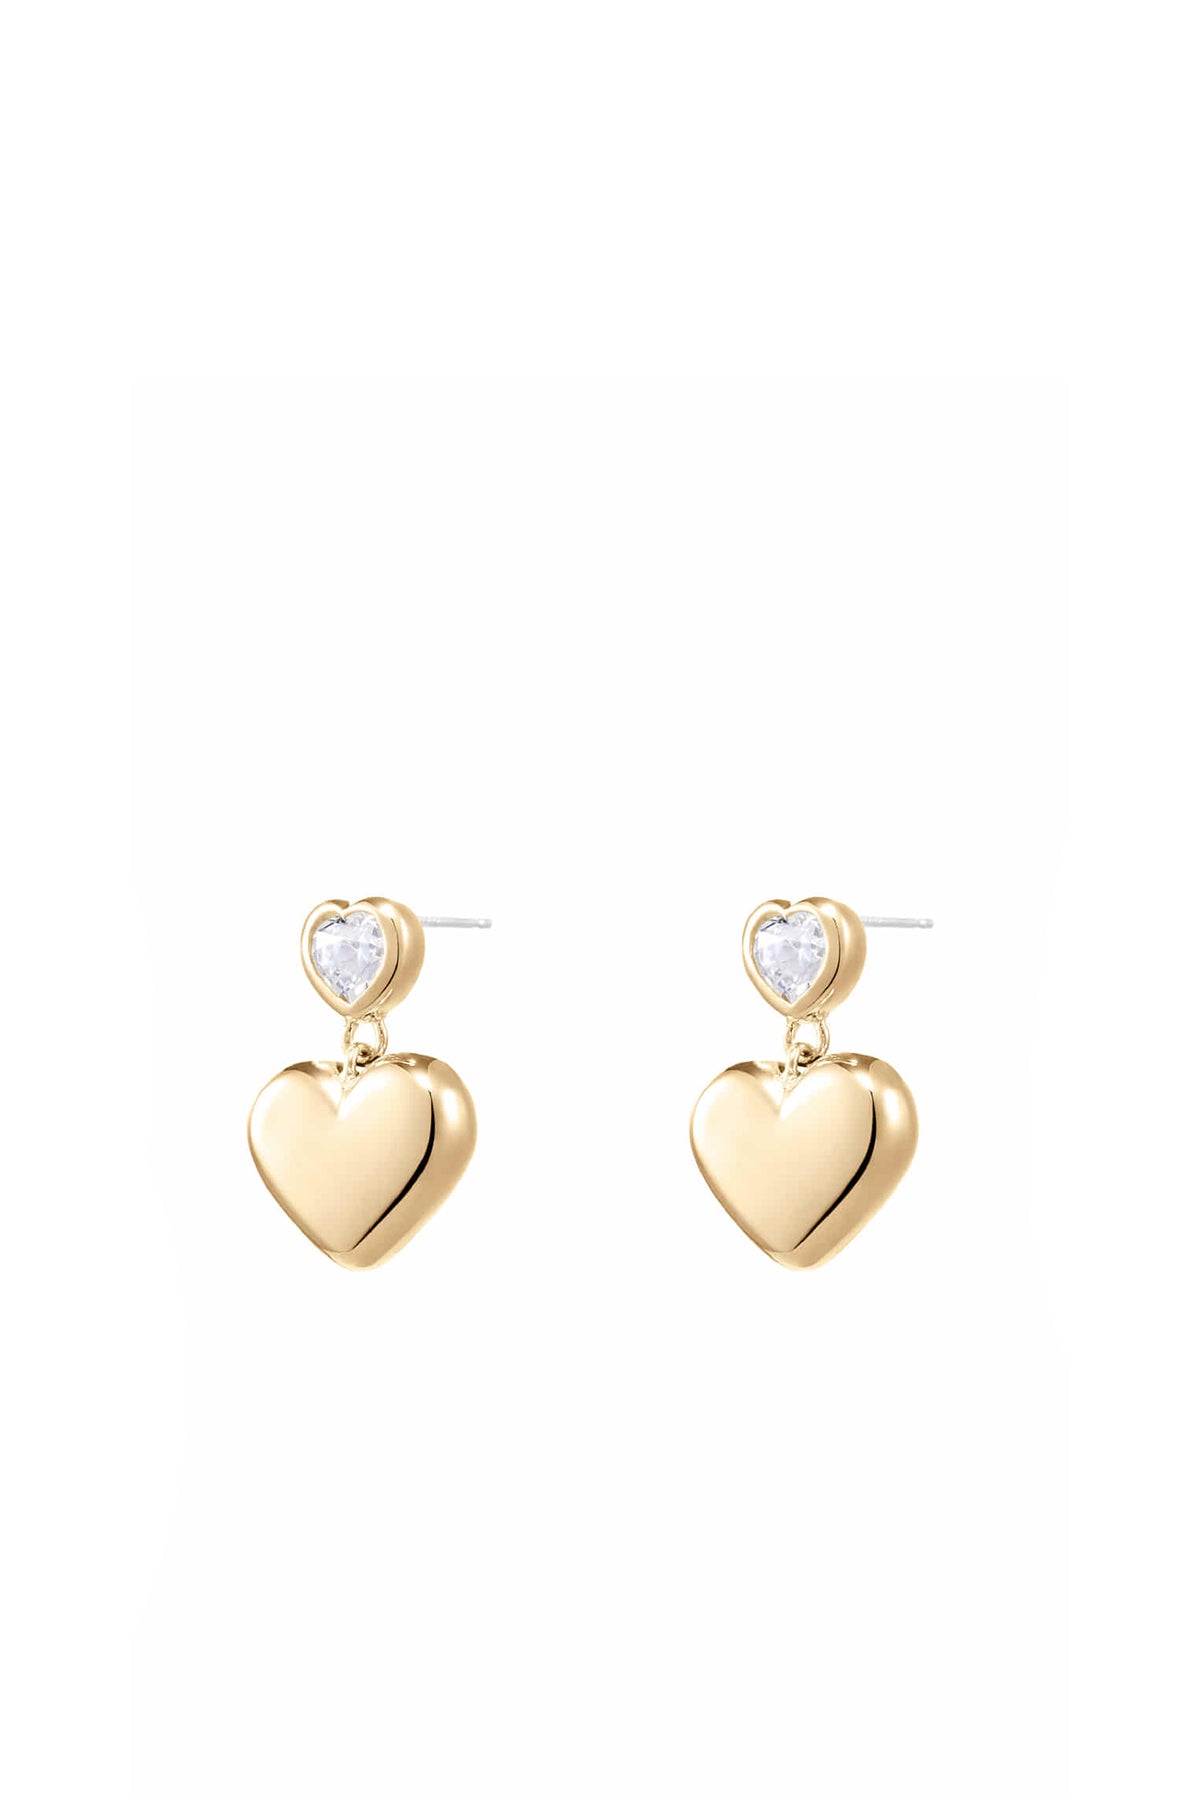 DOUBLE HEART DANGLED EARRINGS / GOLD